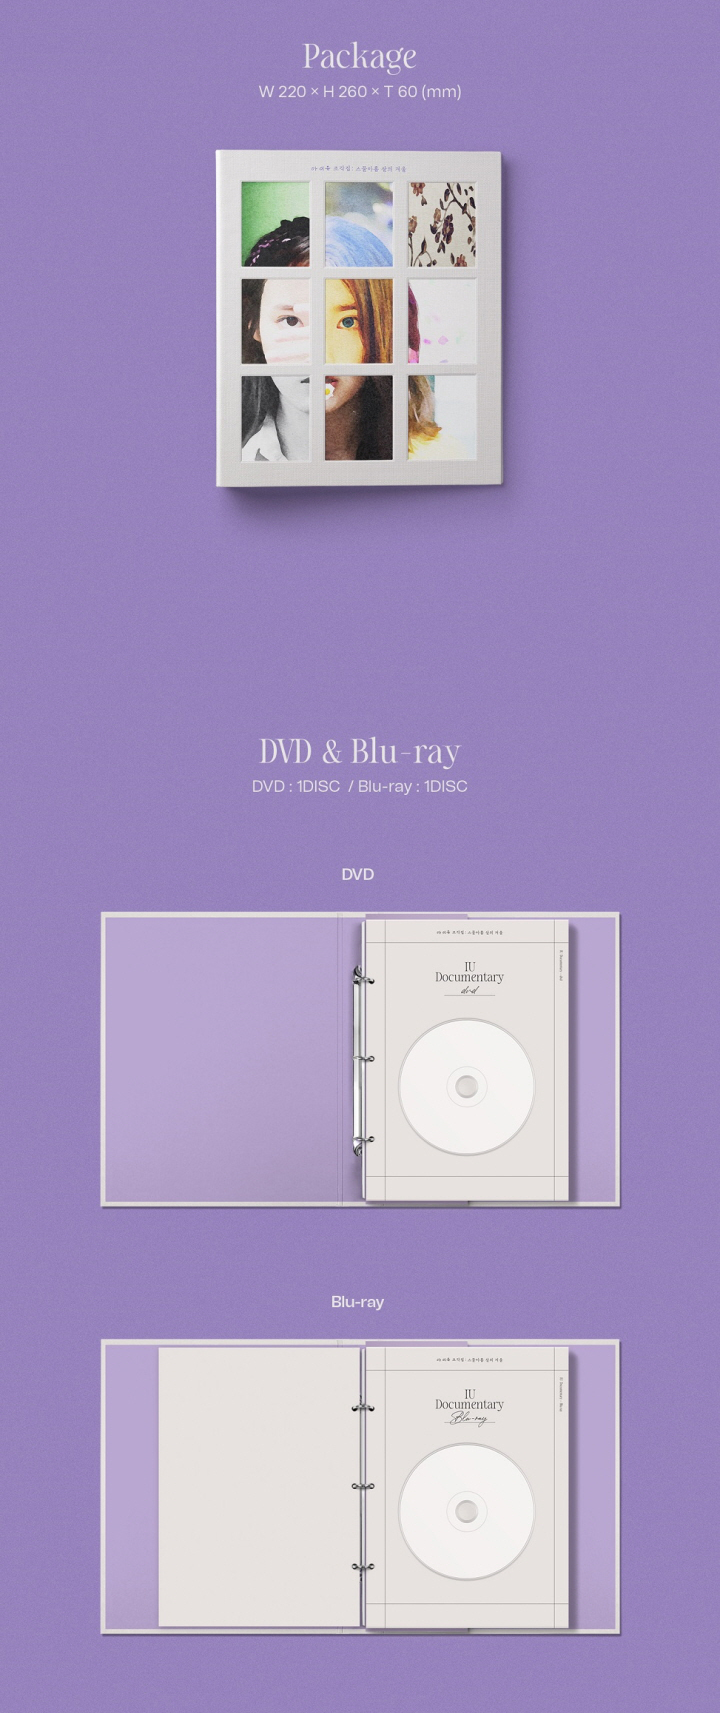 IU - [DOCUMENTARY '조각집 : 스물아홉 살의 겨울] DVD + BLU-RAY